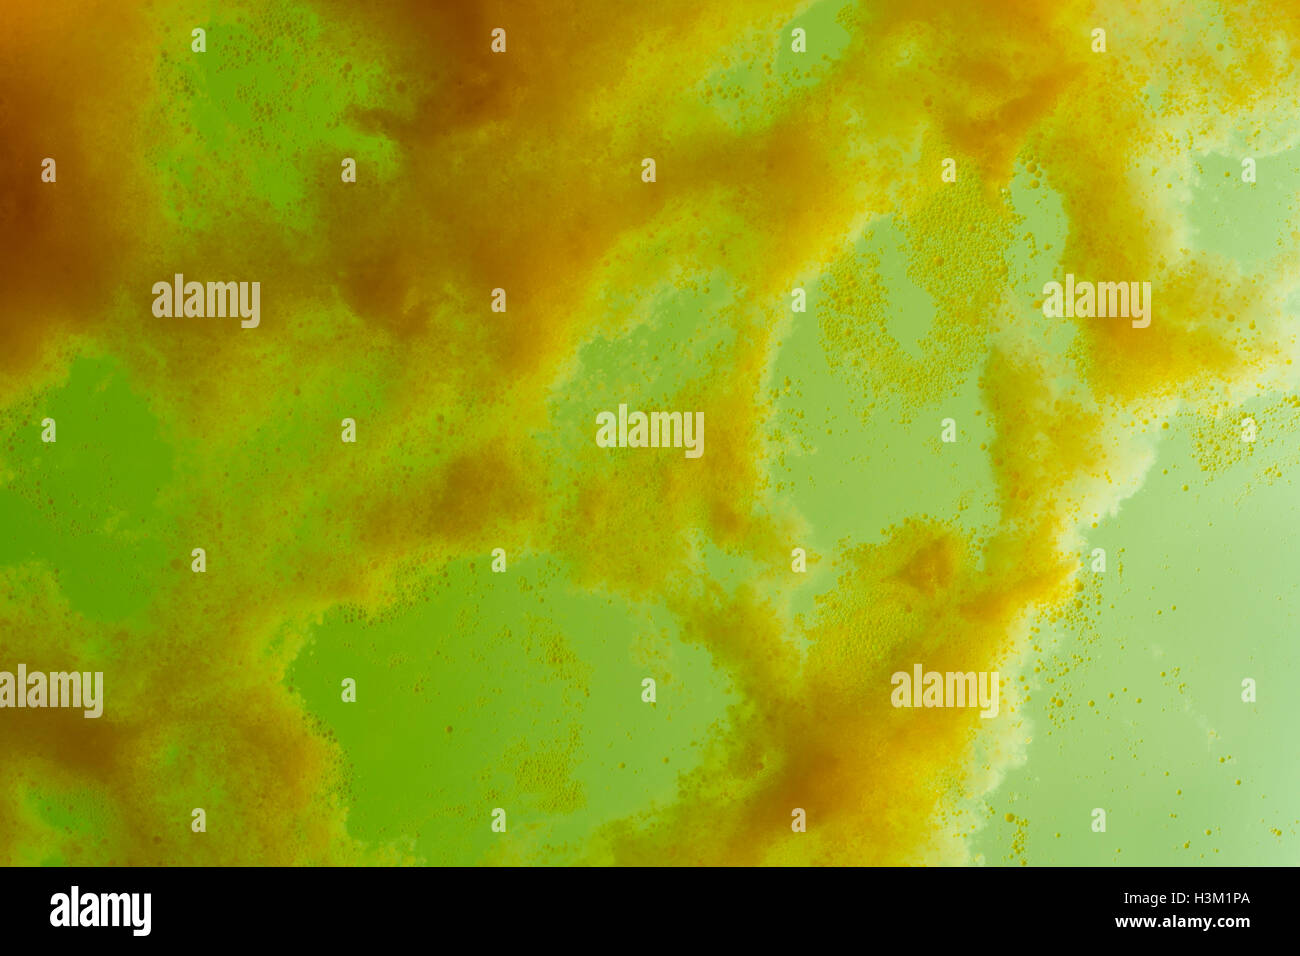 Immagine astratta di acidi grassi di acqua saponata bolle - mostra minute goccioline di grasso e alcune bolle nel verde di sapone liquido. Foto Stock